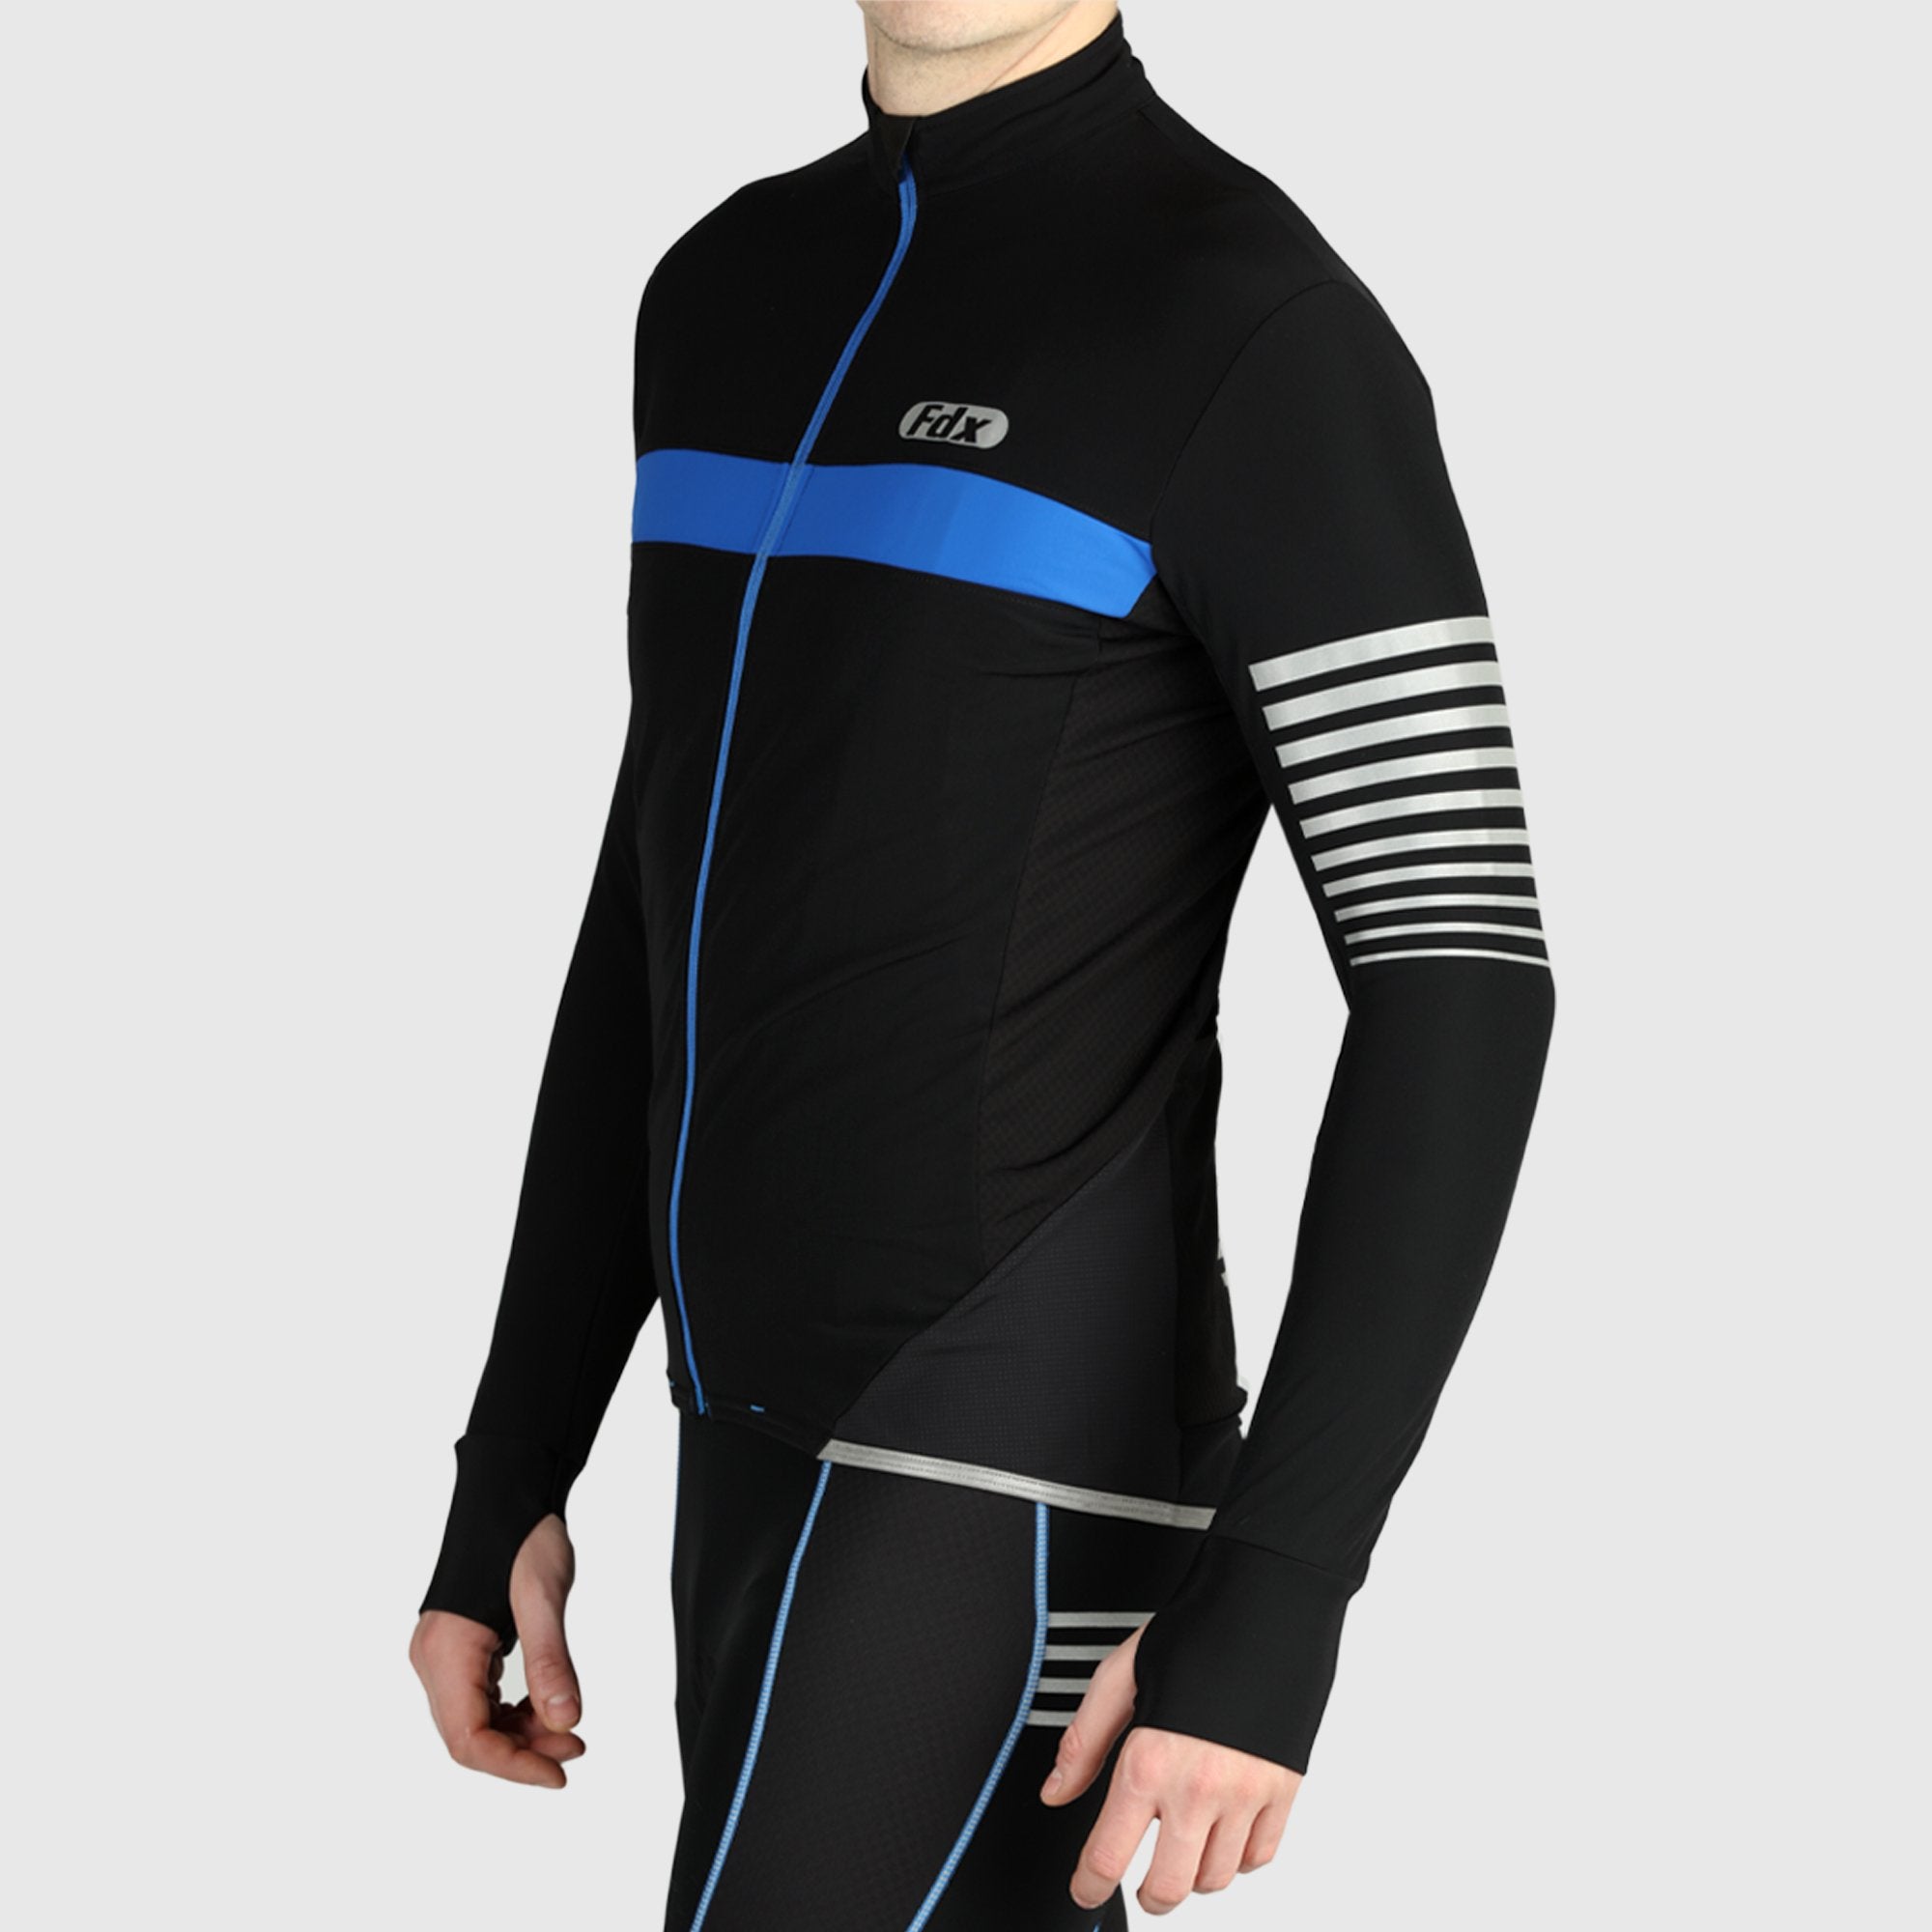 Fdx Men's Black & Blue Best Long Sleeve Cycling Jersey for Winter Roubaix Thermal Fleece Road Bike Wear Top Full Zipper, Pockets & Hi viz Reflectors - All Day